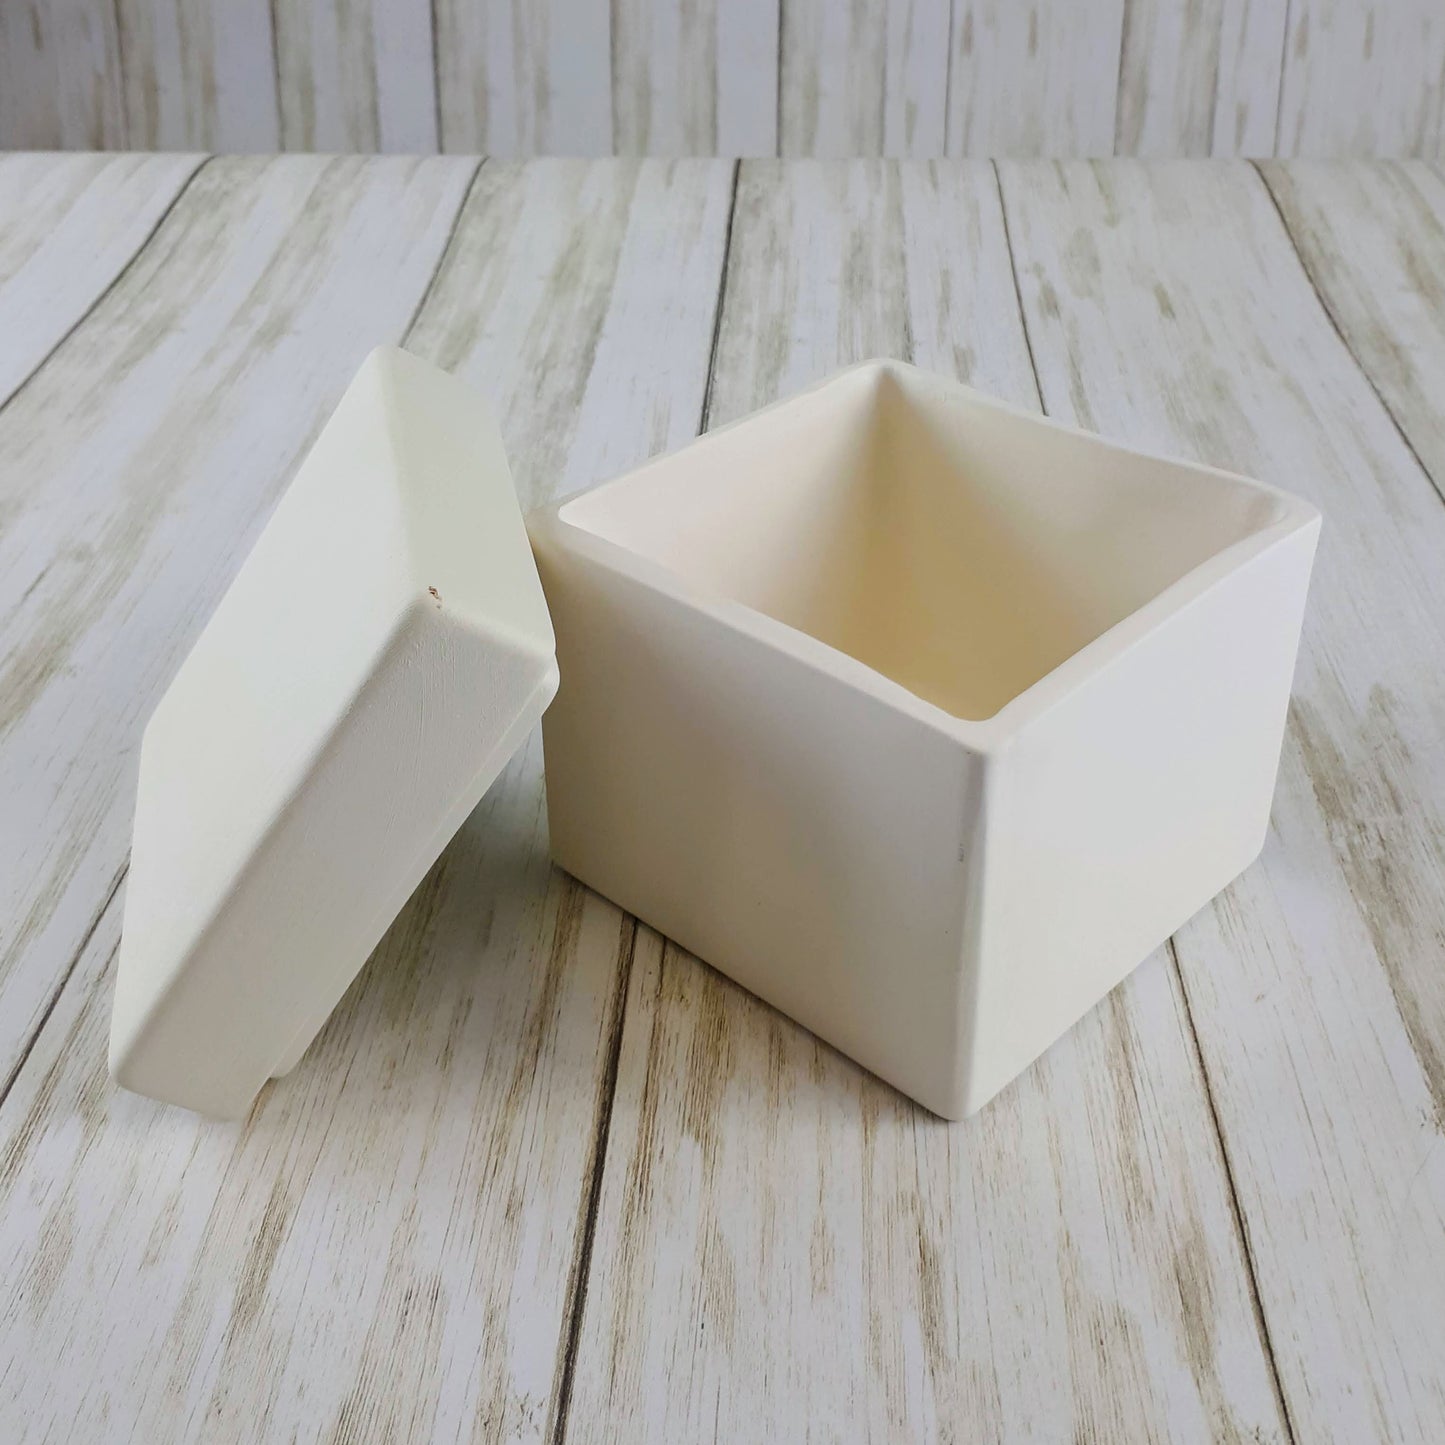 4" Cube Box